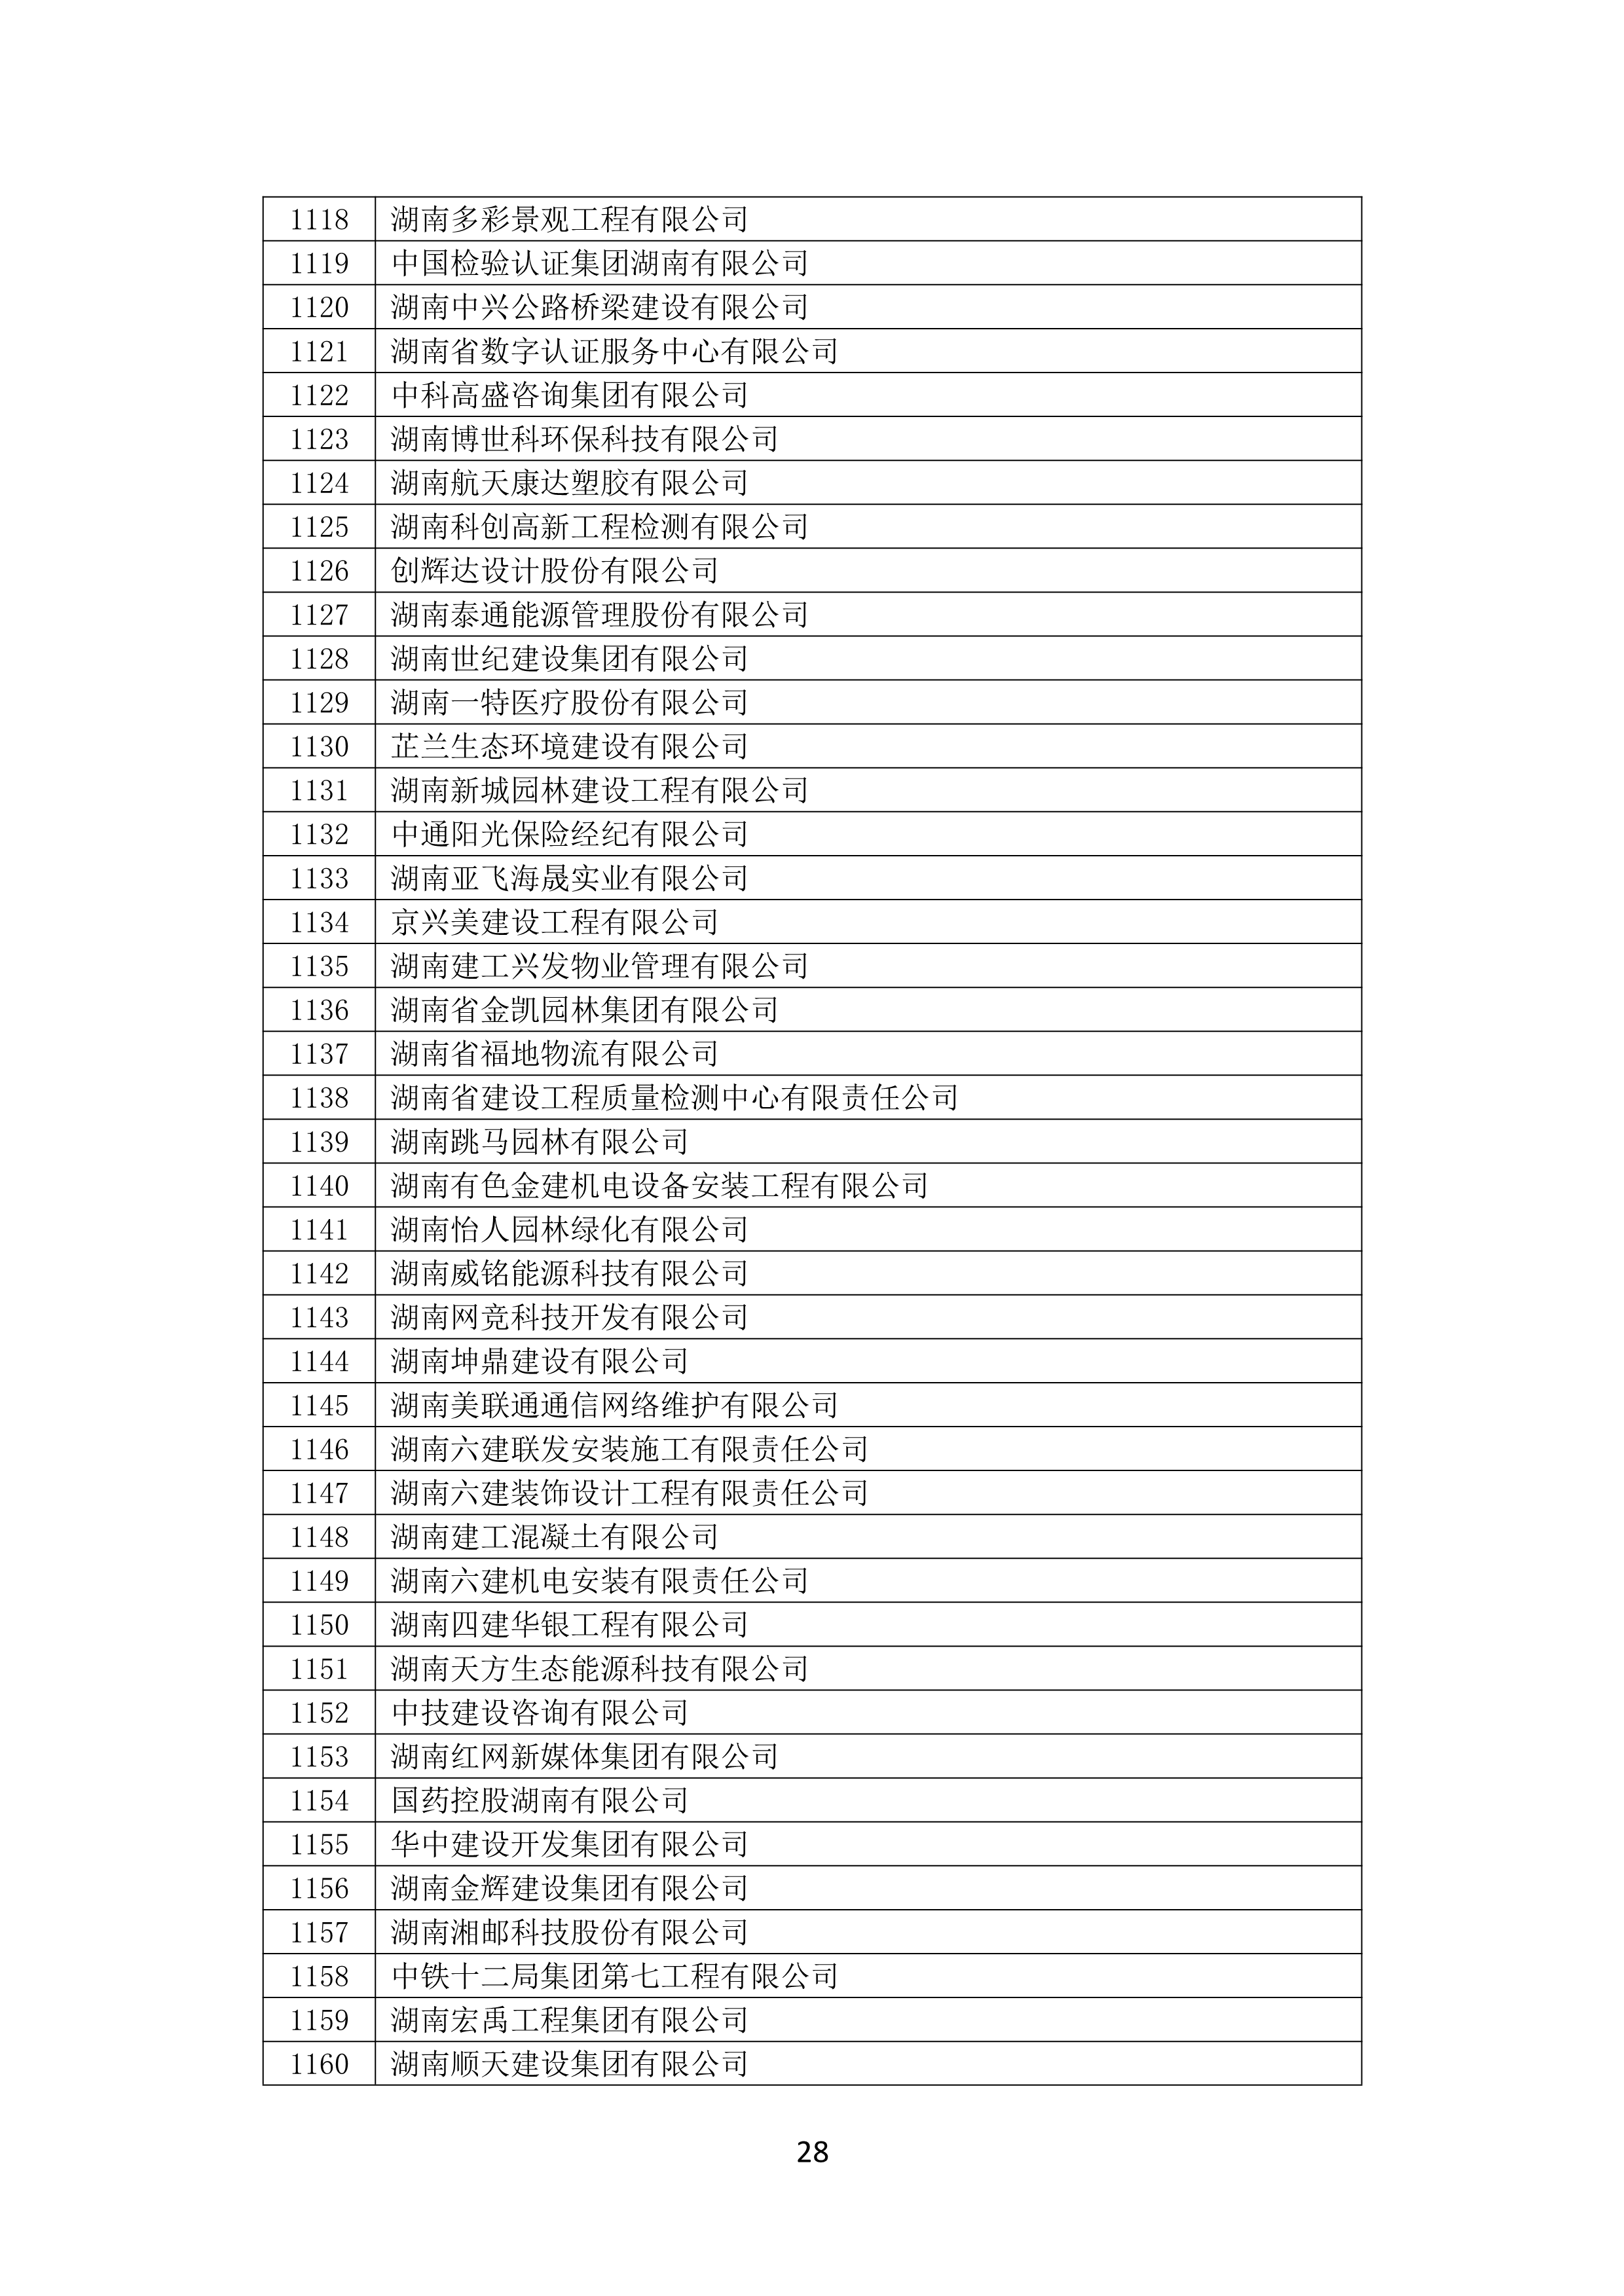 2021 年(nián)度湖南省守合同重信用企業名單_29.png